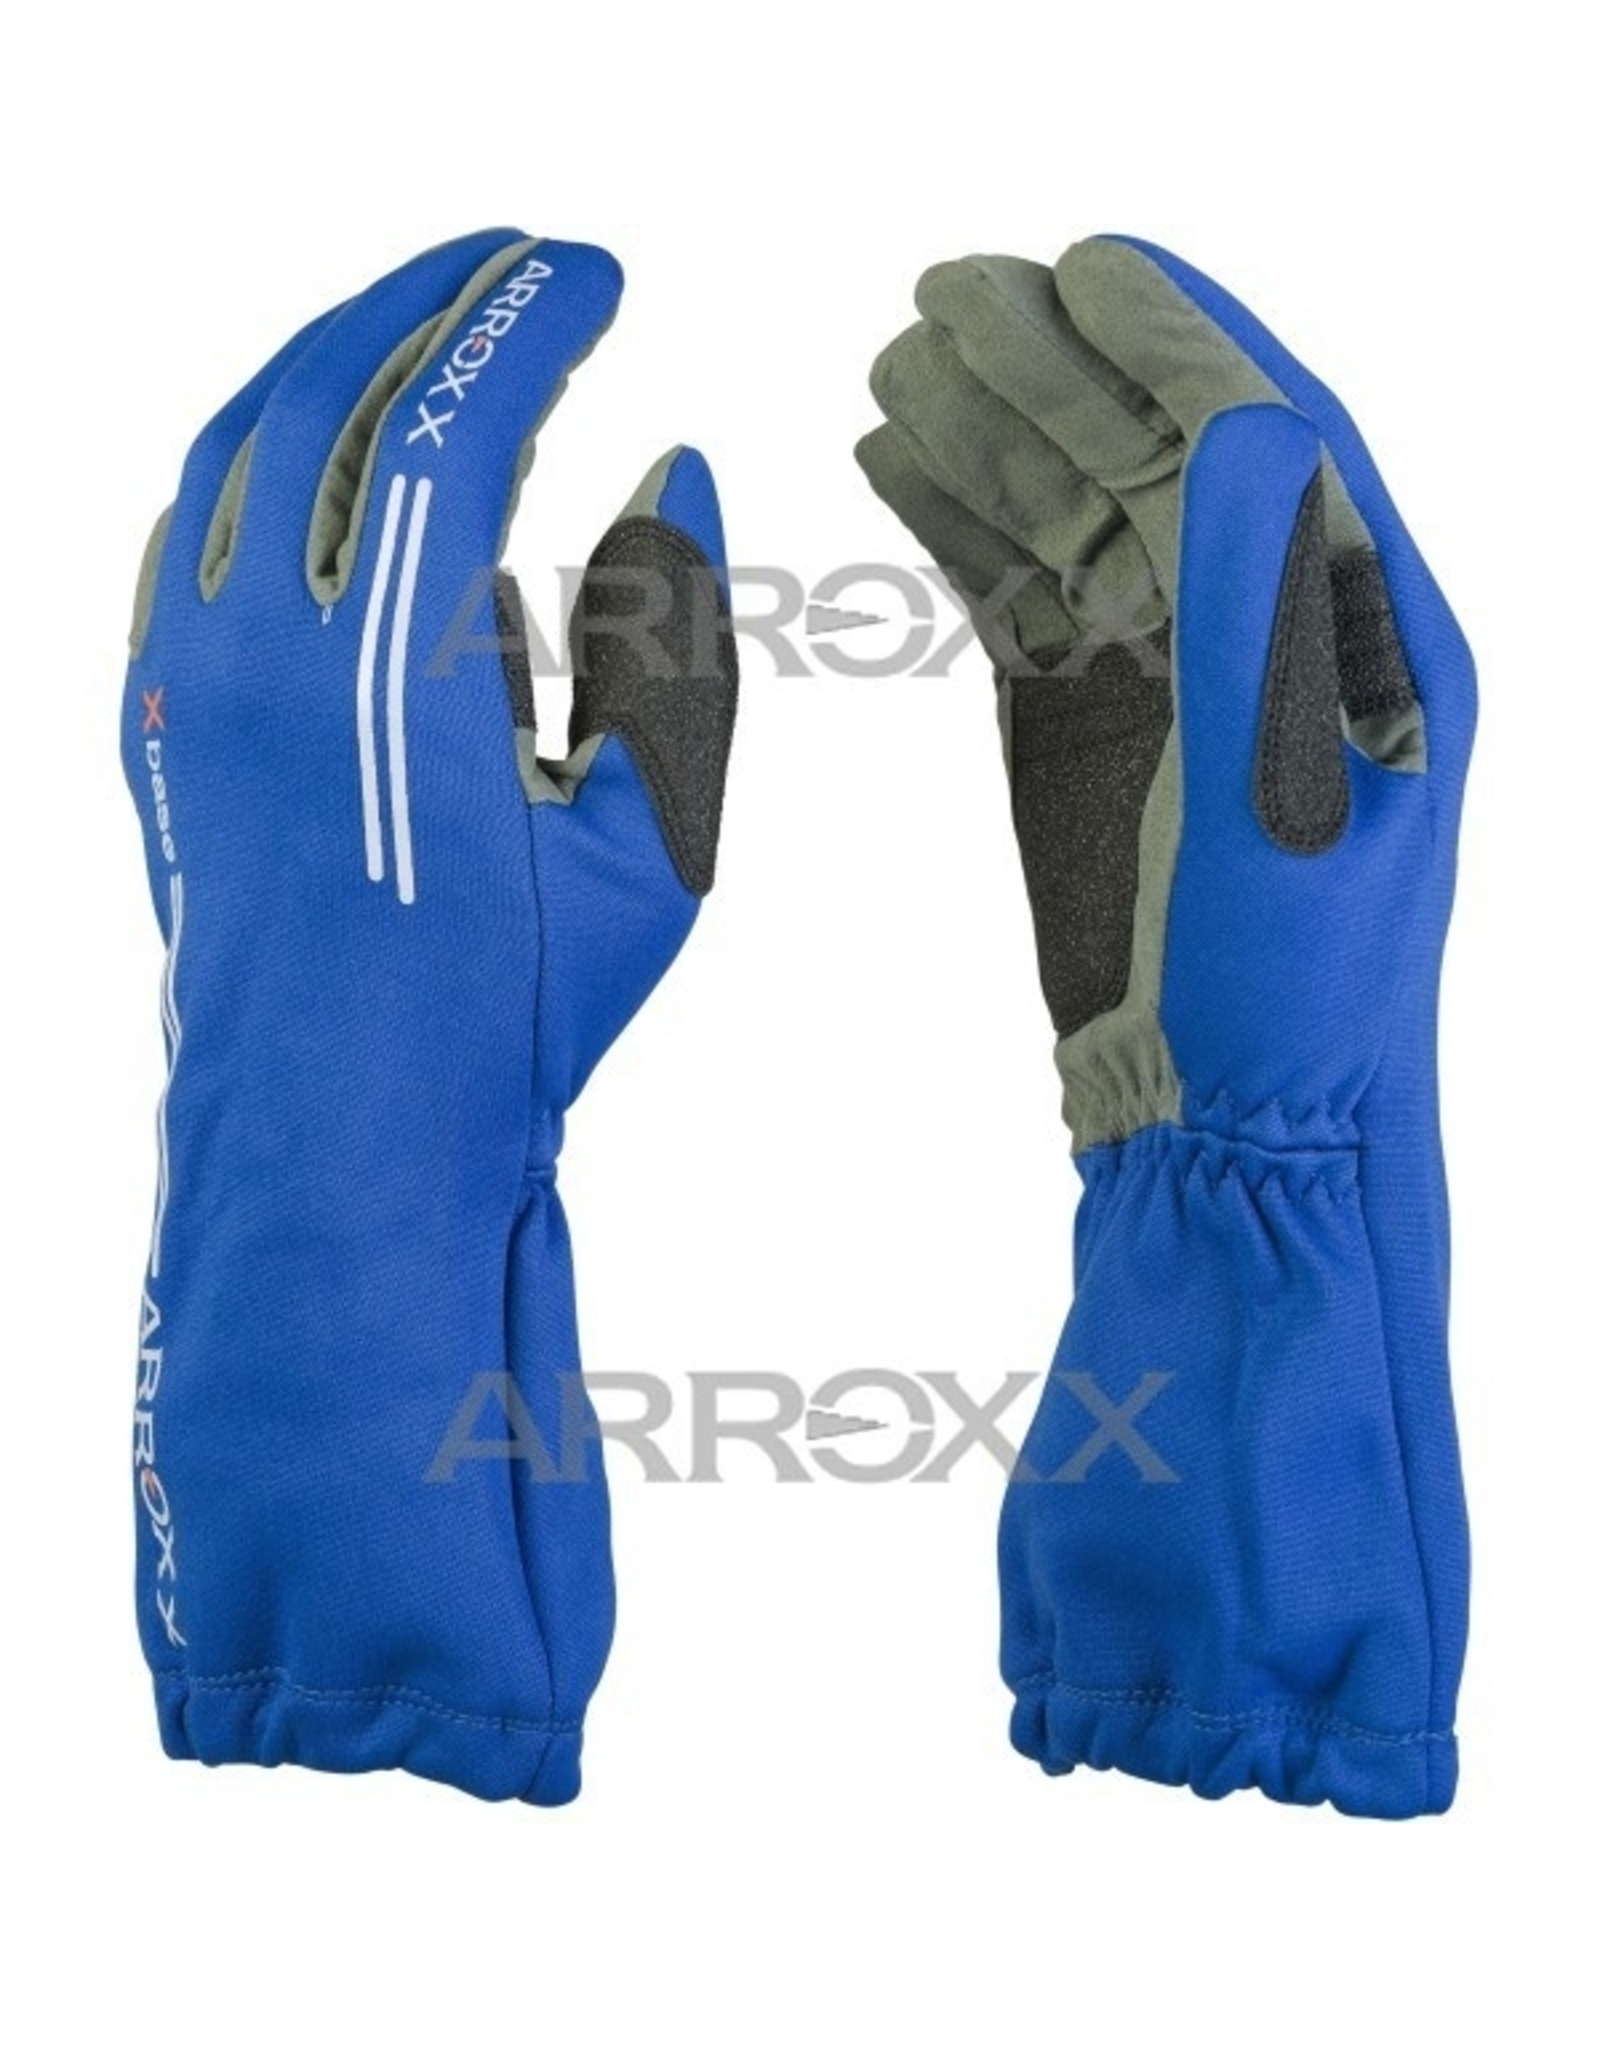 Arroxx Arroxx handschoenen Xbase blauw